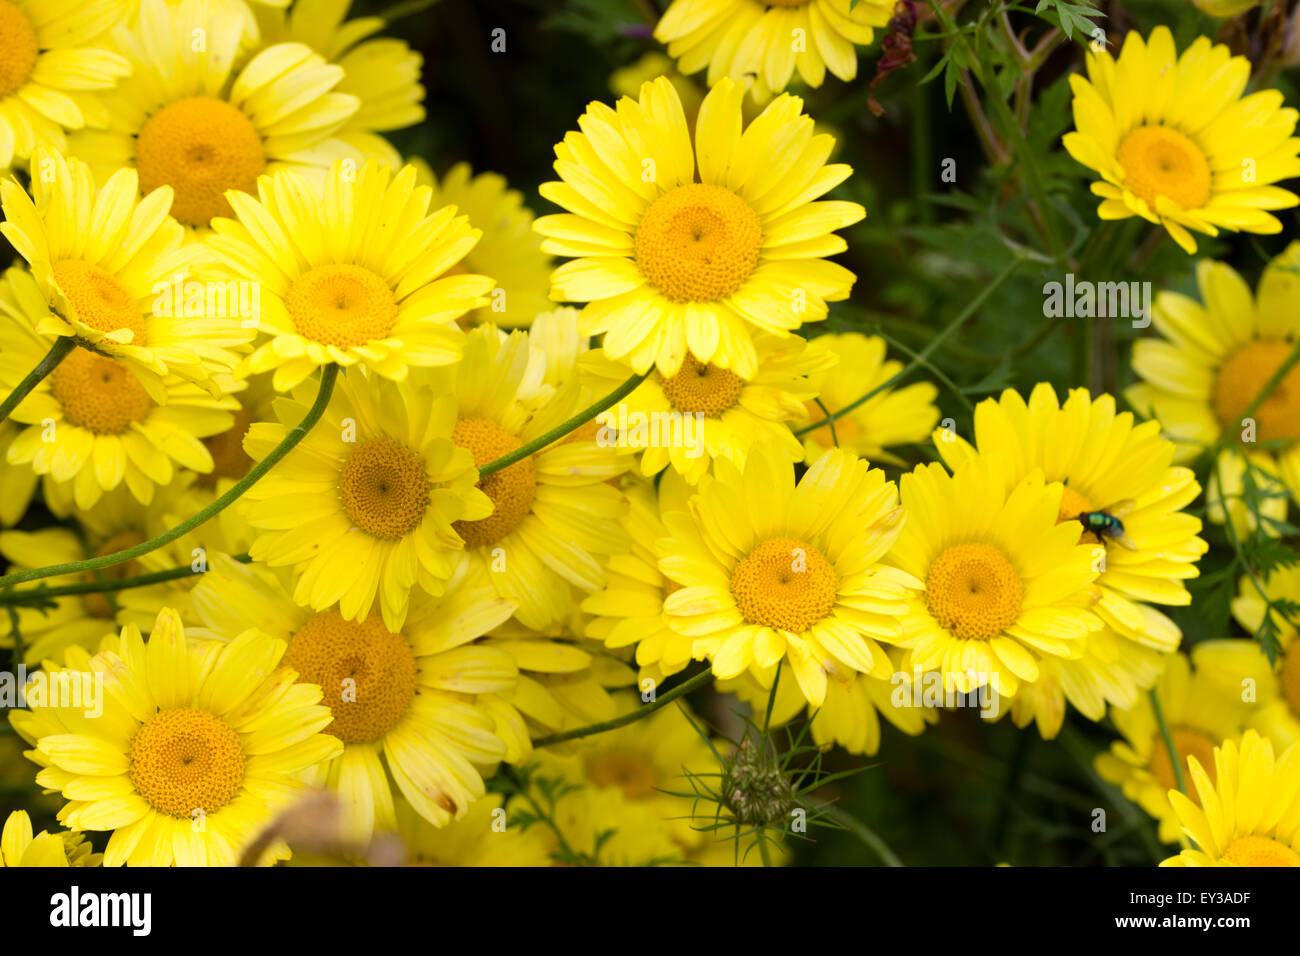 Große Gänseblümchen Blumen der mehrjährige gelbe Kamille, Anthemis tinctoria Stockfoto